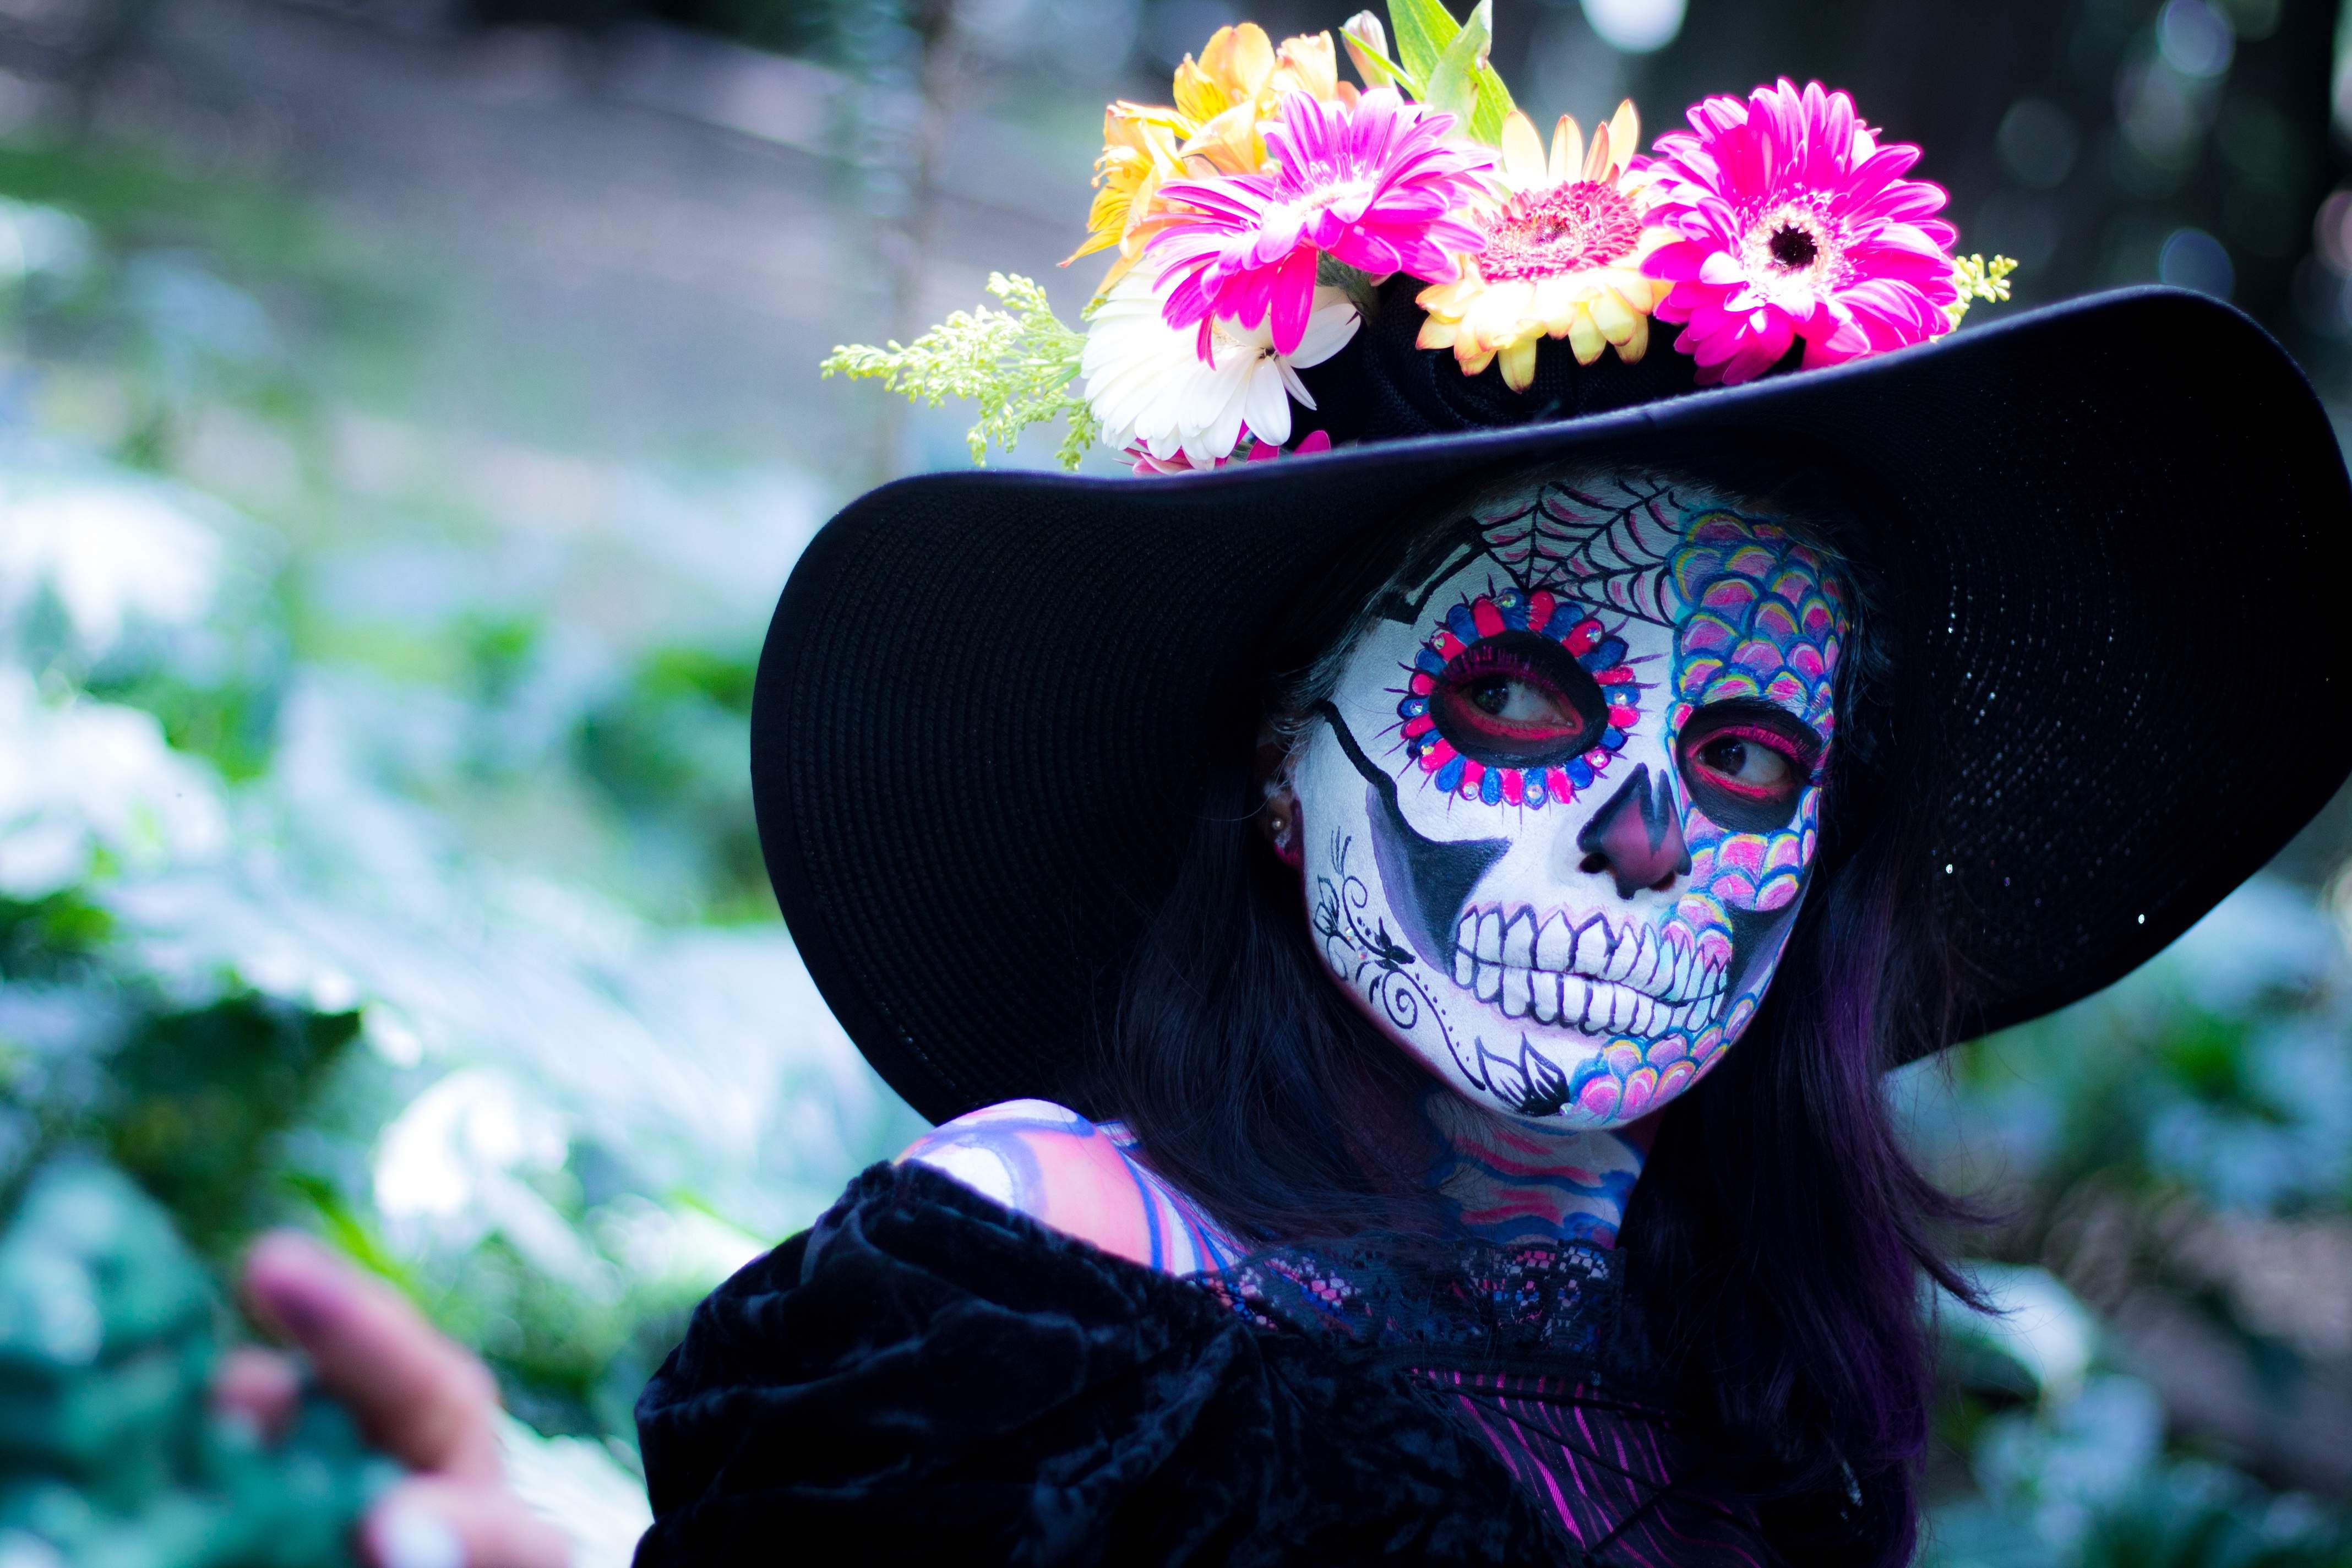 W meksykańskich, przerażających czasem przebraniach, któ- re są elementem świętowania Dnia Wszystkich Zmarłych, nie chodzi o zabawę. W taki sposób w tej kulturze oswaja się śmierć